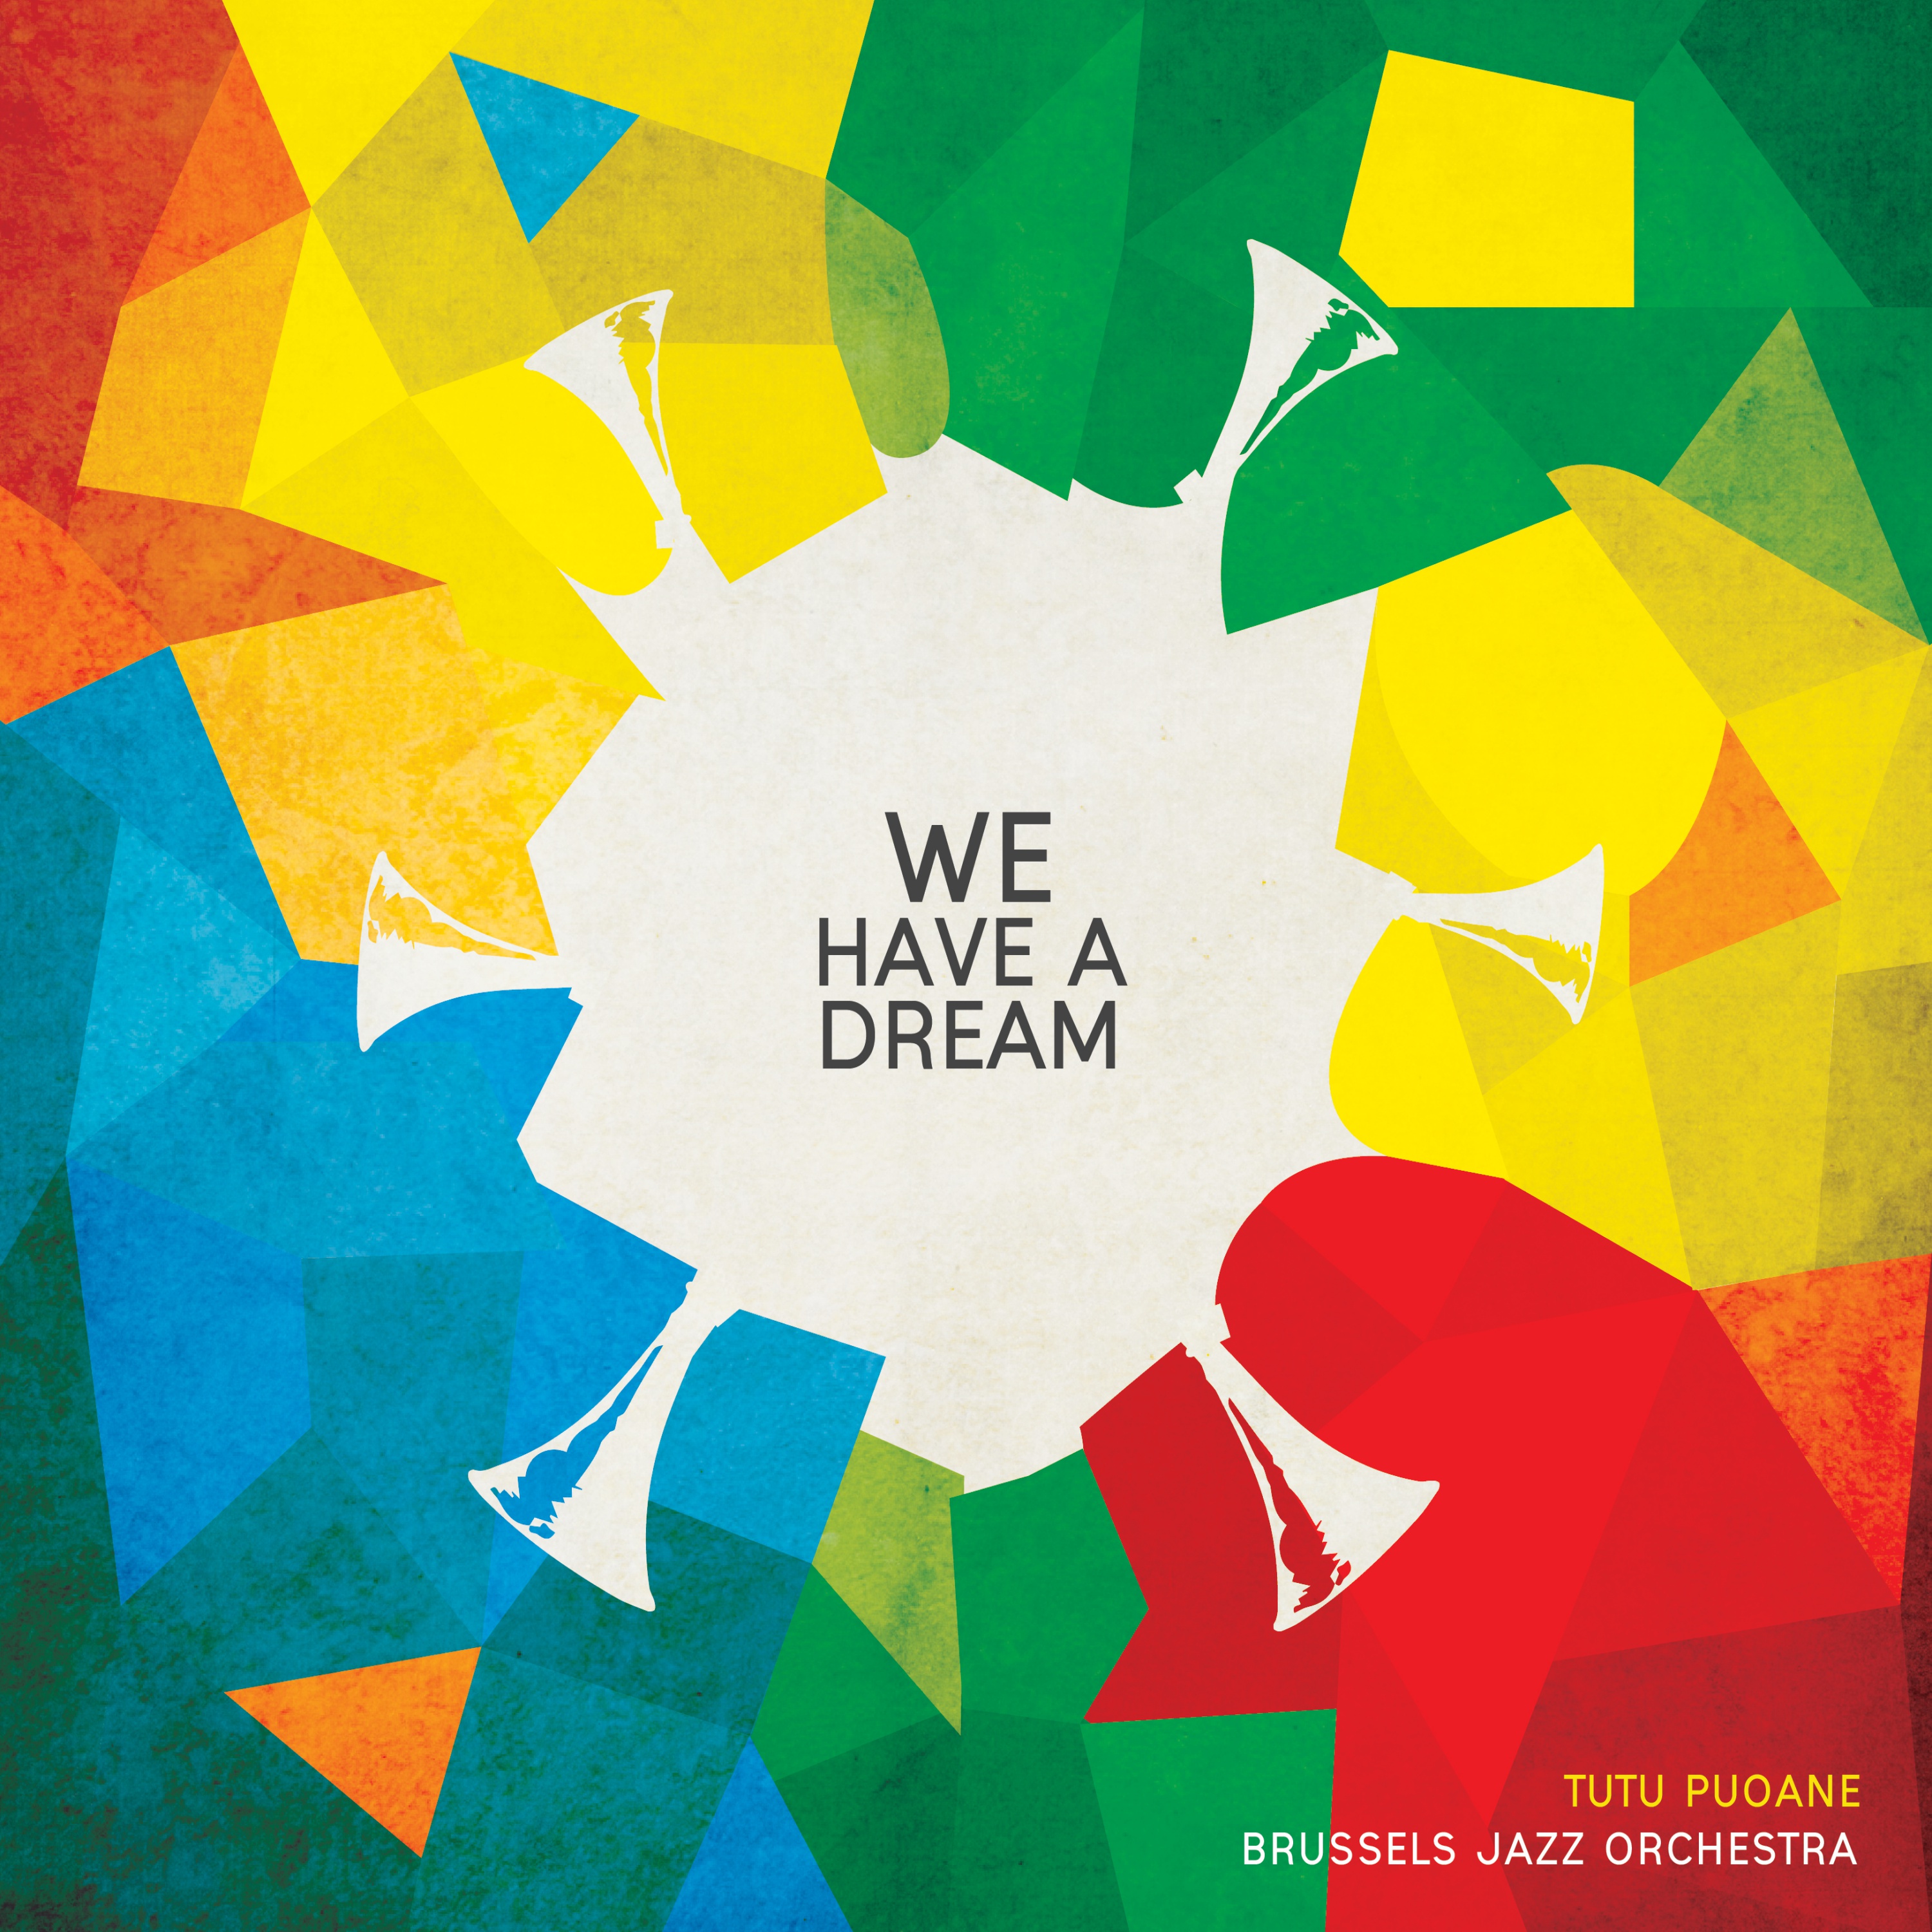 BRUSSELS JAZZ ORCHESTRA - Brussels Jazz Orchestra / Tutu Puoane : We Have A Dream cover 